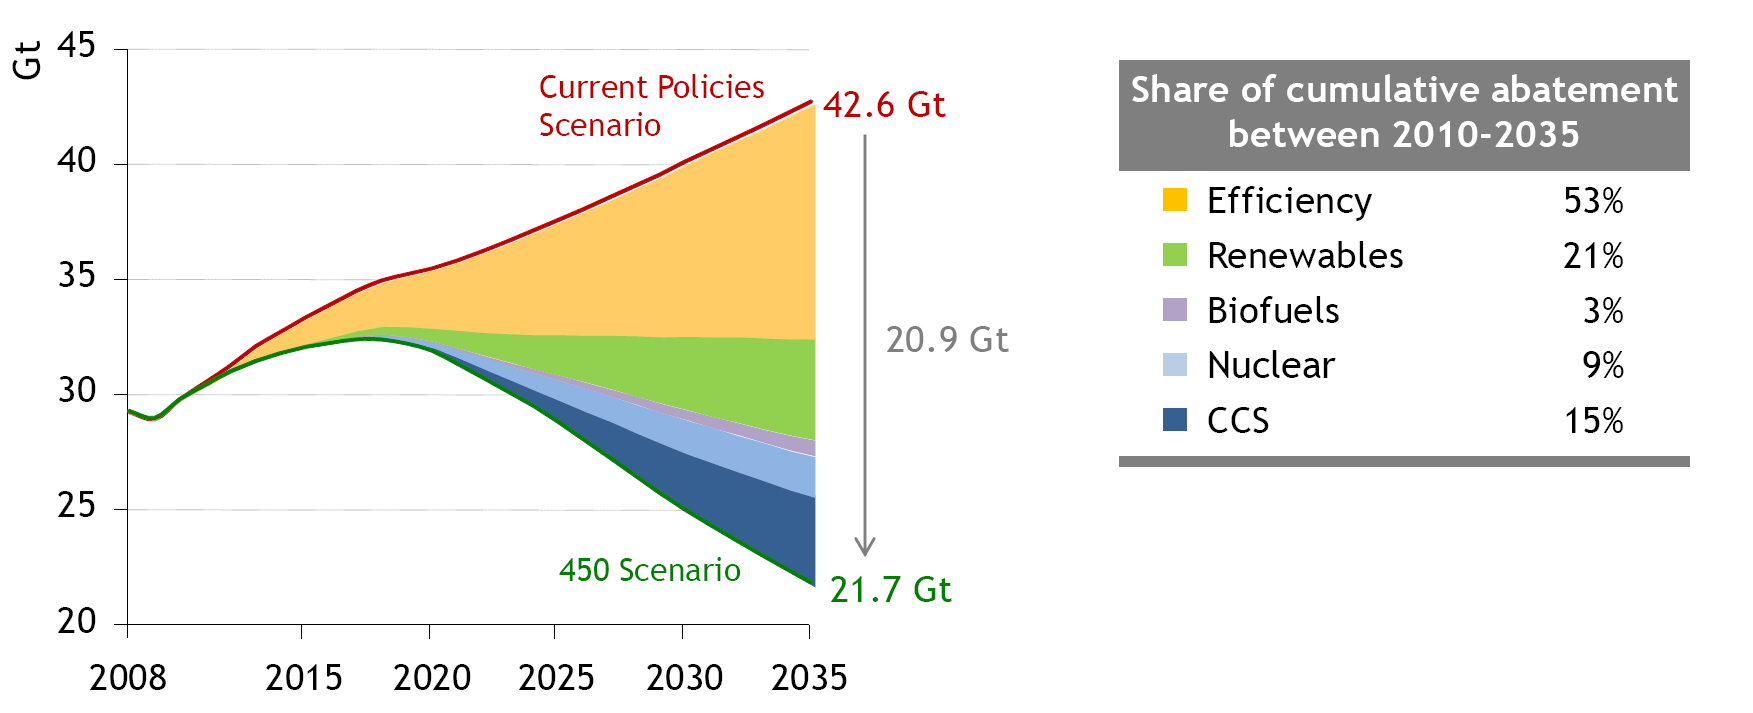 Papel de las diferentes tecnologías en el recorte de las emisiones globales de C02 relacionadas con la energía.